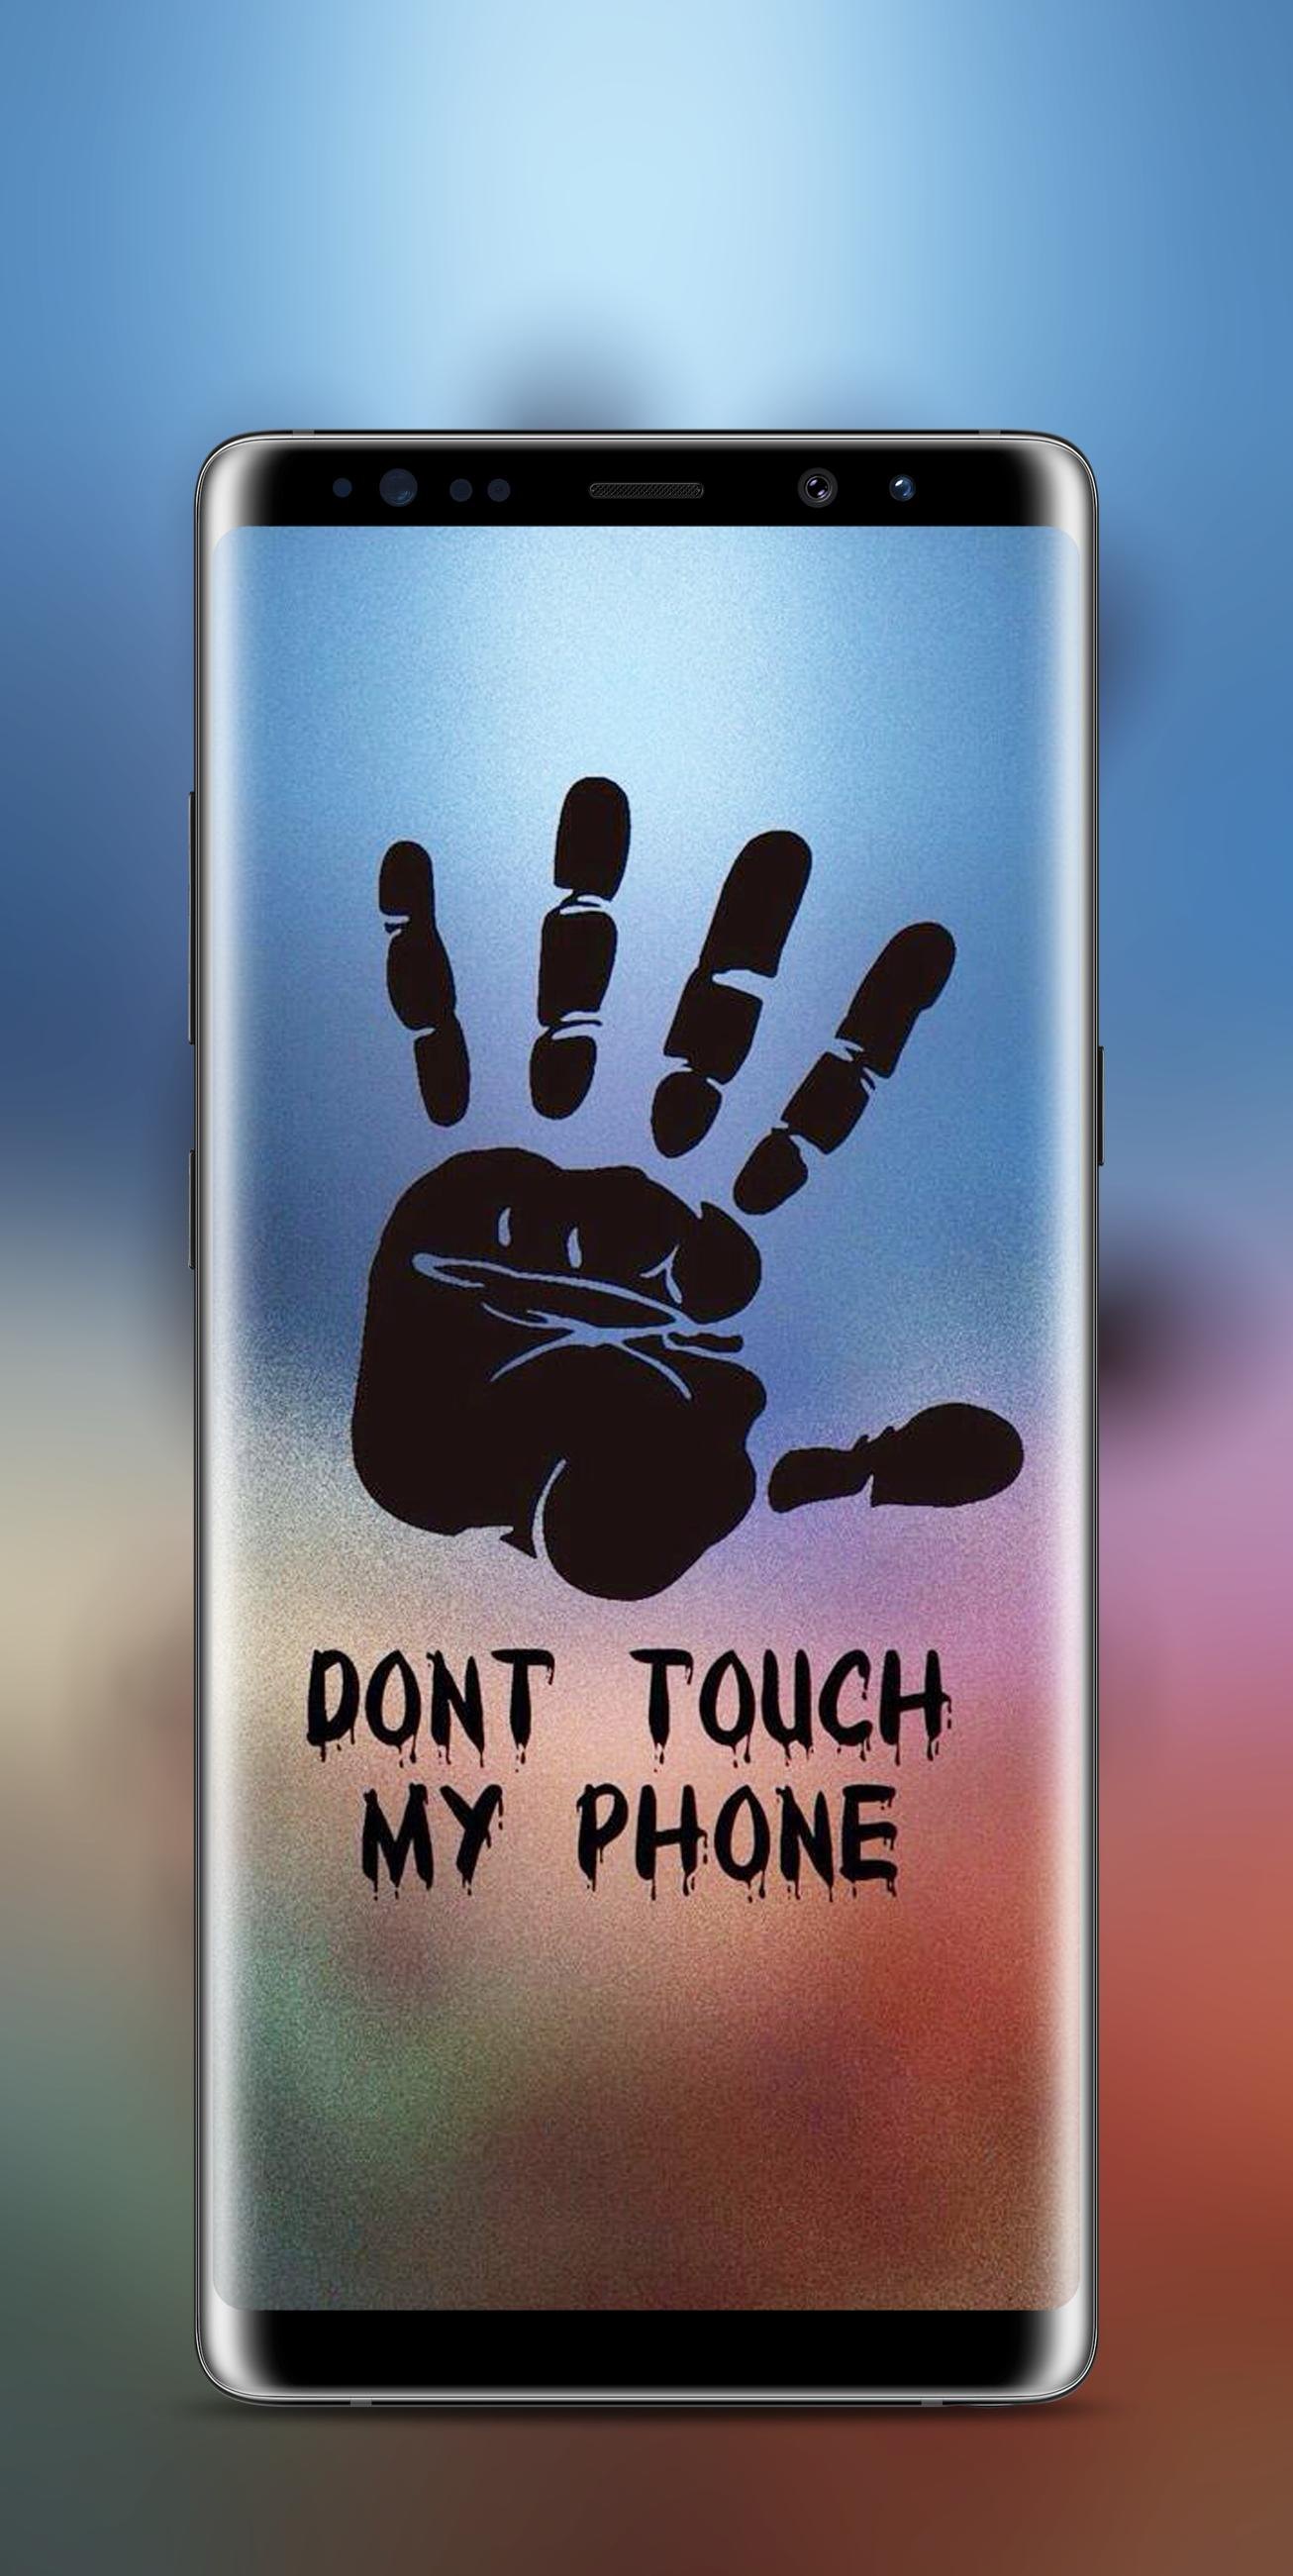 Надписи про телефон. Не трогай мой телефон. Прикольный экран блокировки. Обои не трогай мой телефон. Смешные надписи на экран блокировки телефона.